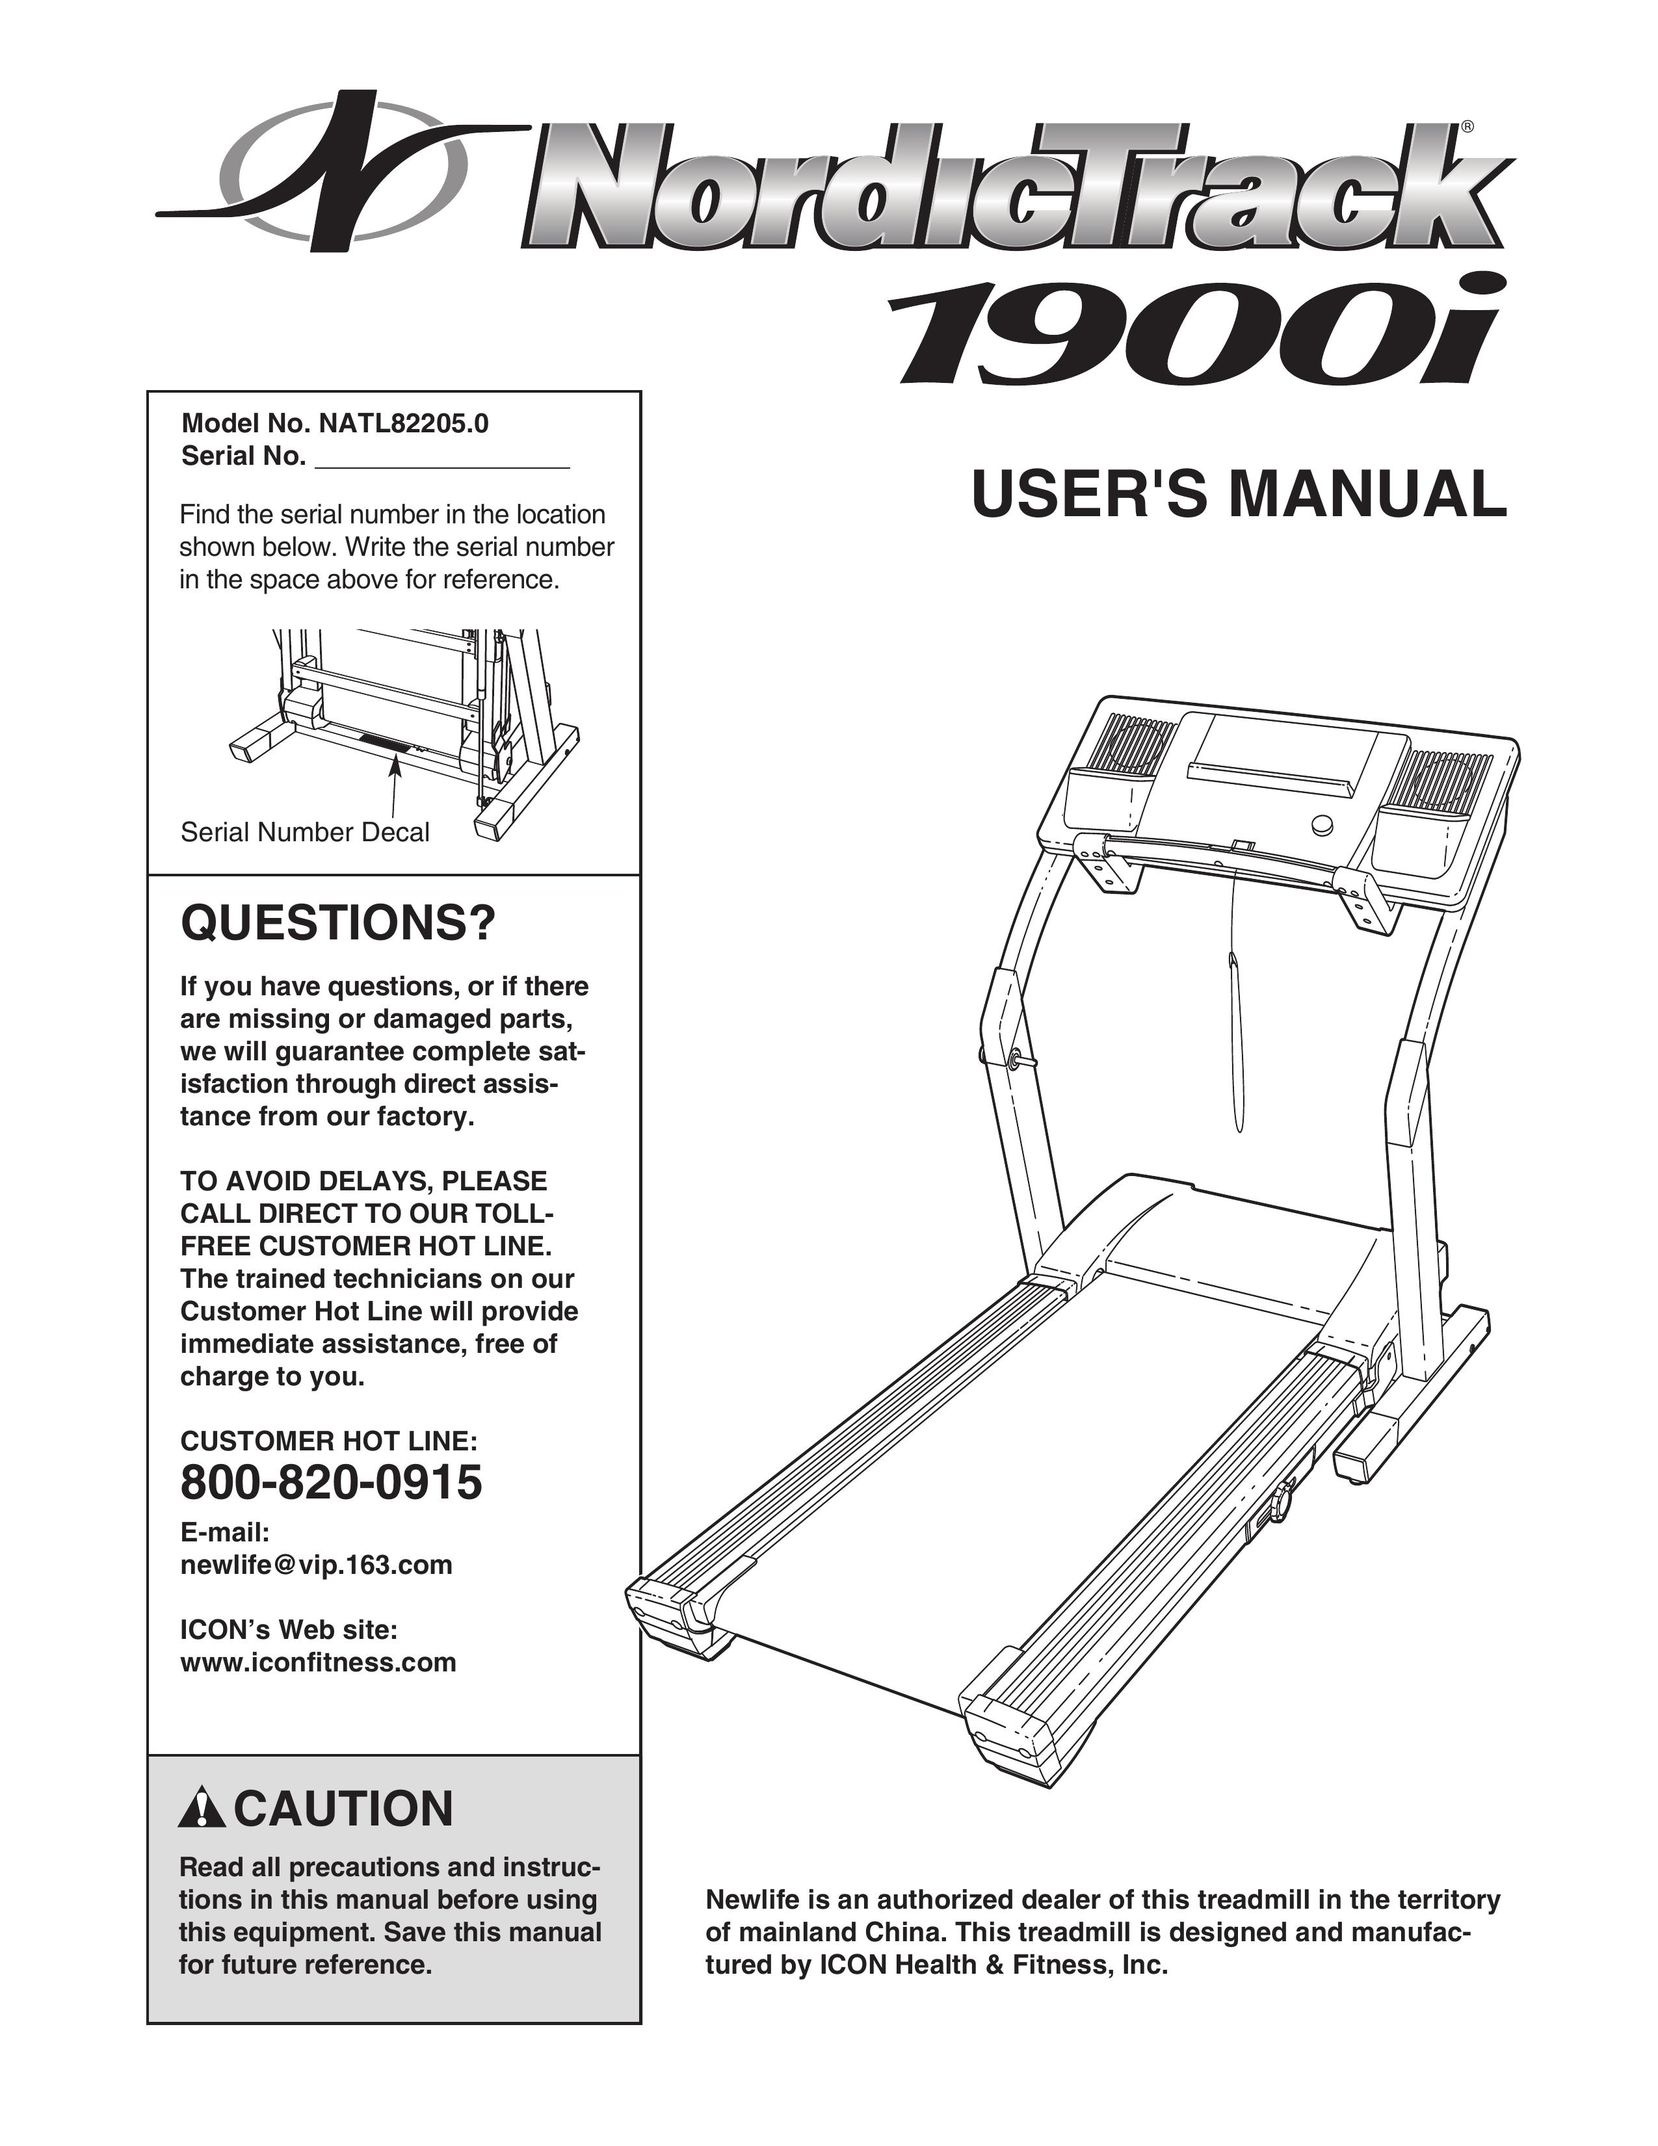 NordicTrack NATL82205.0 Treadmill User Manual